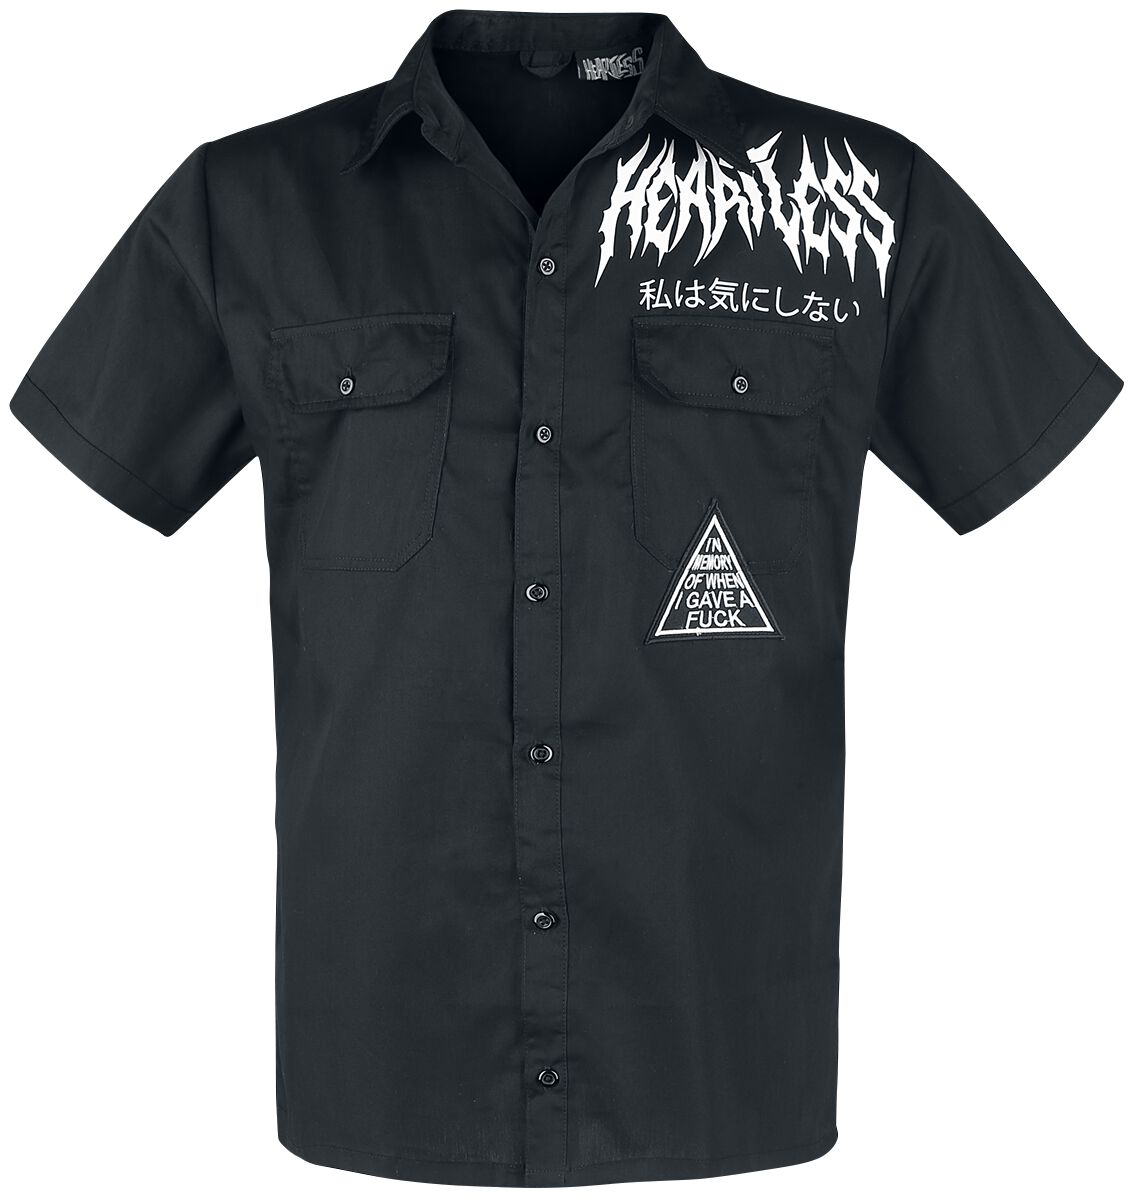 Heartless FU Reaper Shirt Short-sleeved Shirt black